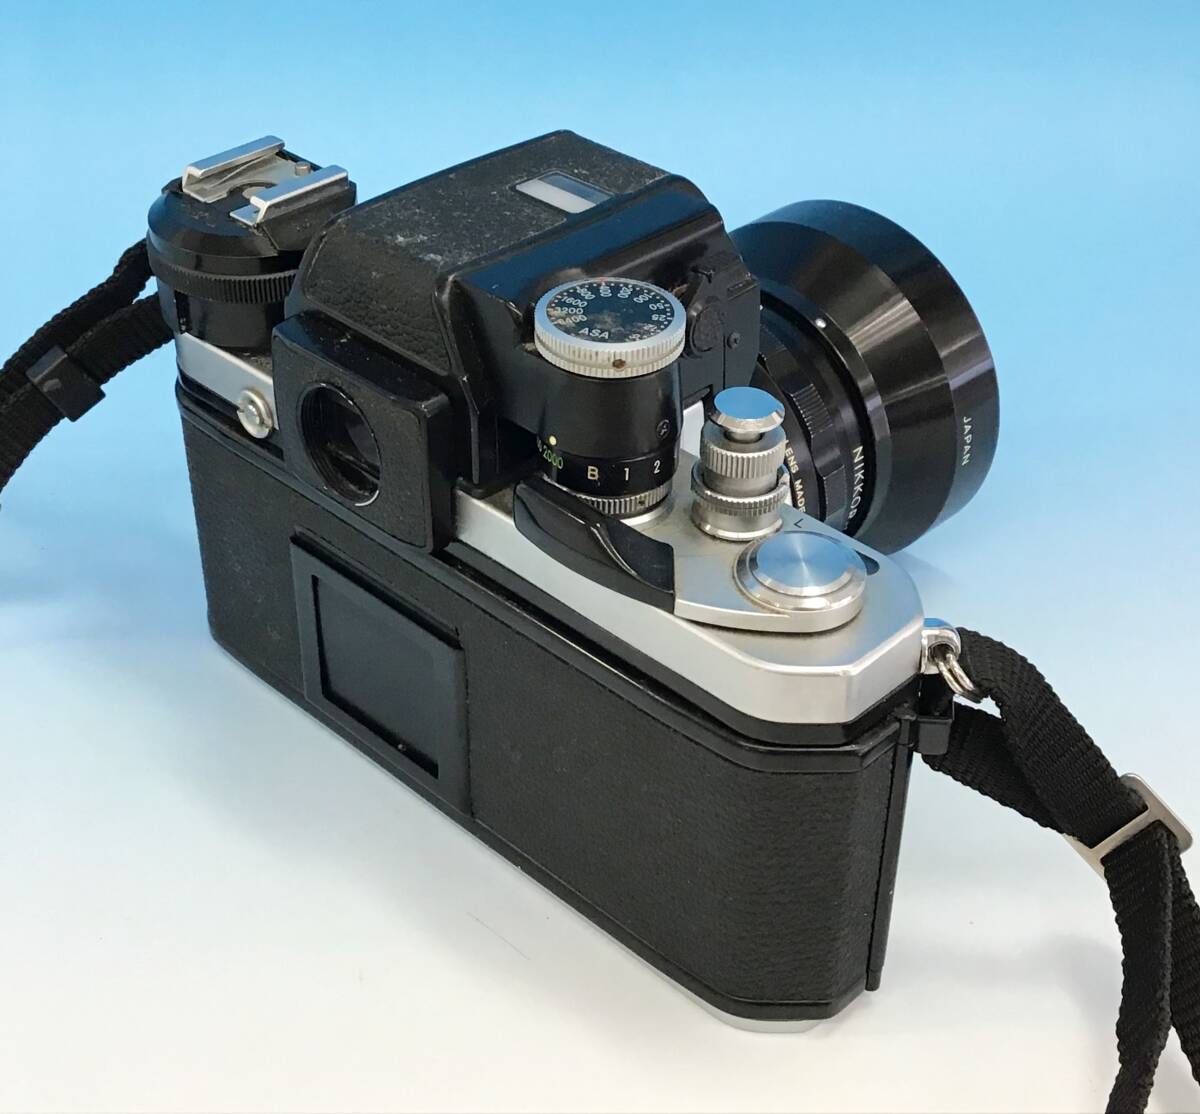 Nikon F2 フォトミック 一眼レフ フィルム カメラ ボディ シルバー/レンズ nikkor 28mm f3.5/レンズフード HS-8 昭和 レトロ ニコン の画像3